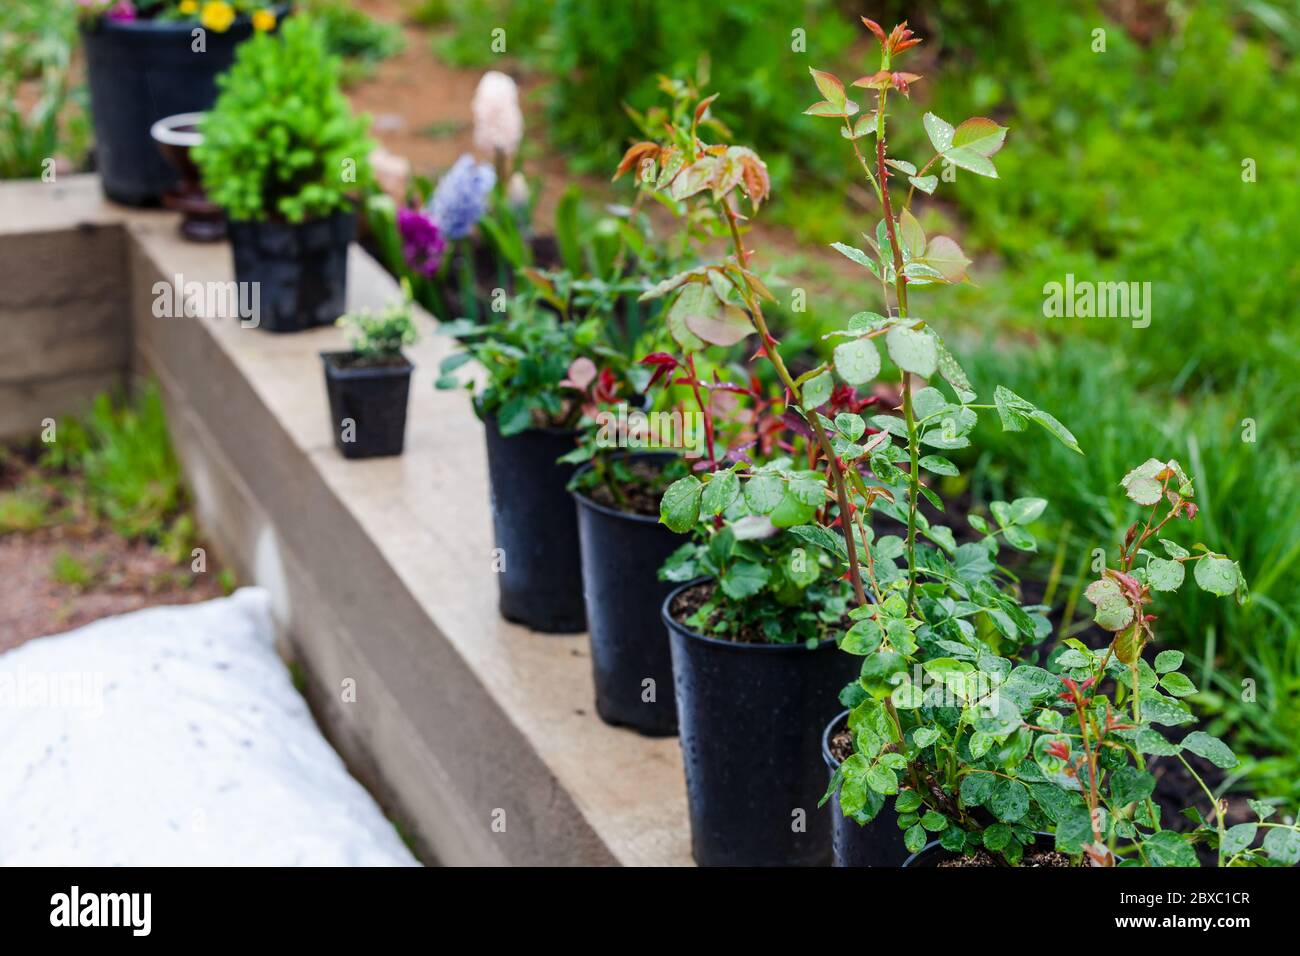 Piante di fiore in vasi di plastica nera si trovano in una fila. Foto di sfondo per il giardinaggio con messa a fuoco selettiva Foto Stock